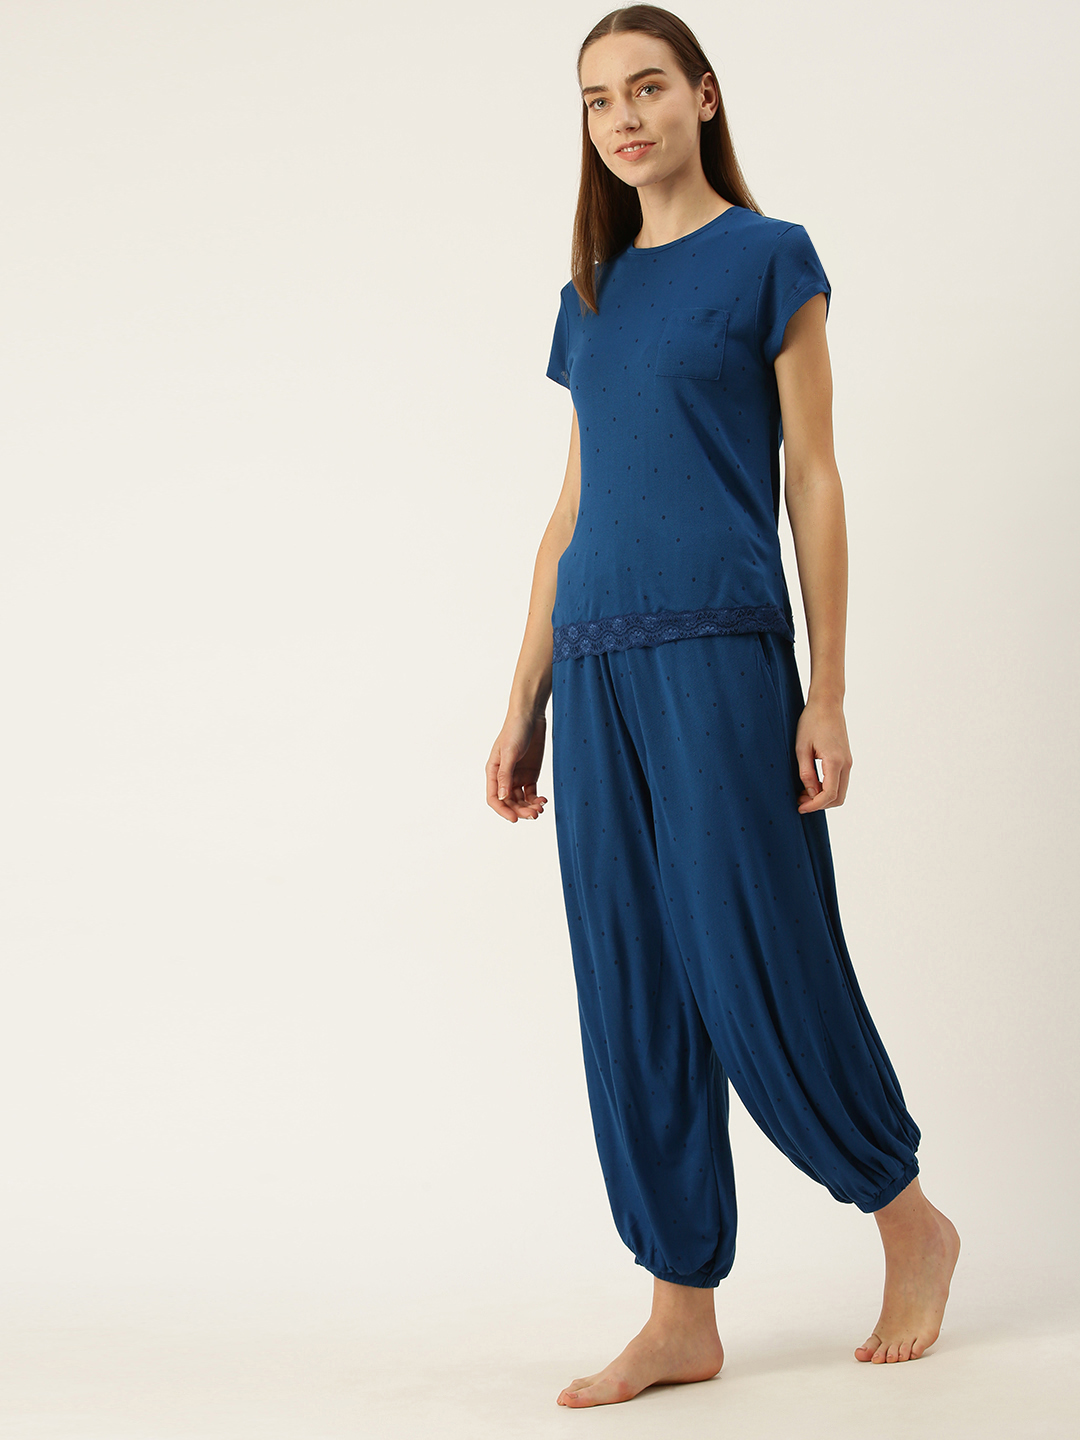 Slumber Jill Polka print lace blue Pyjama set